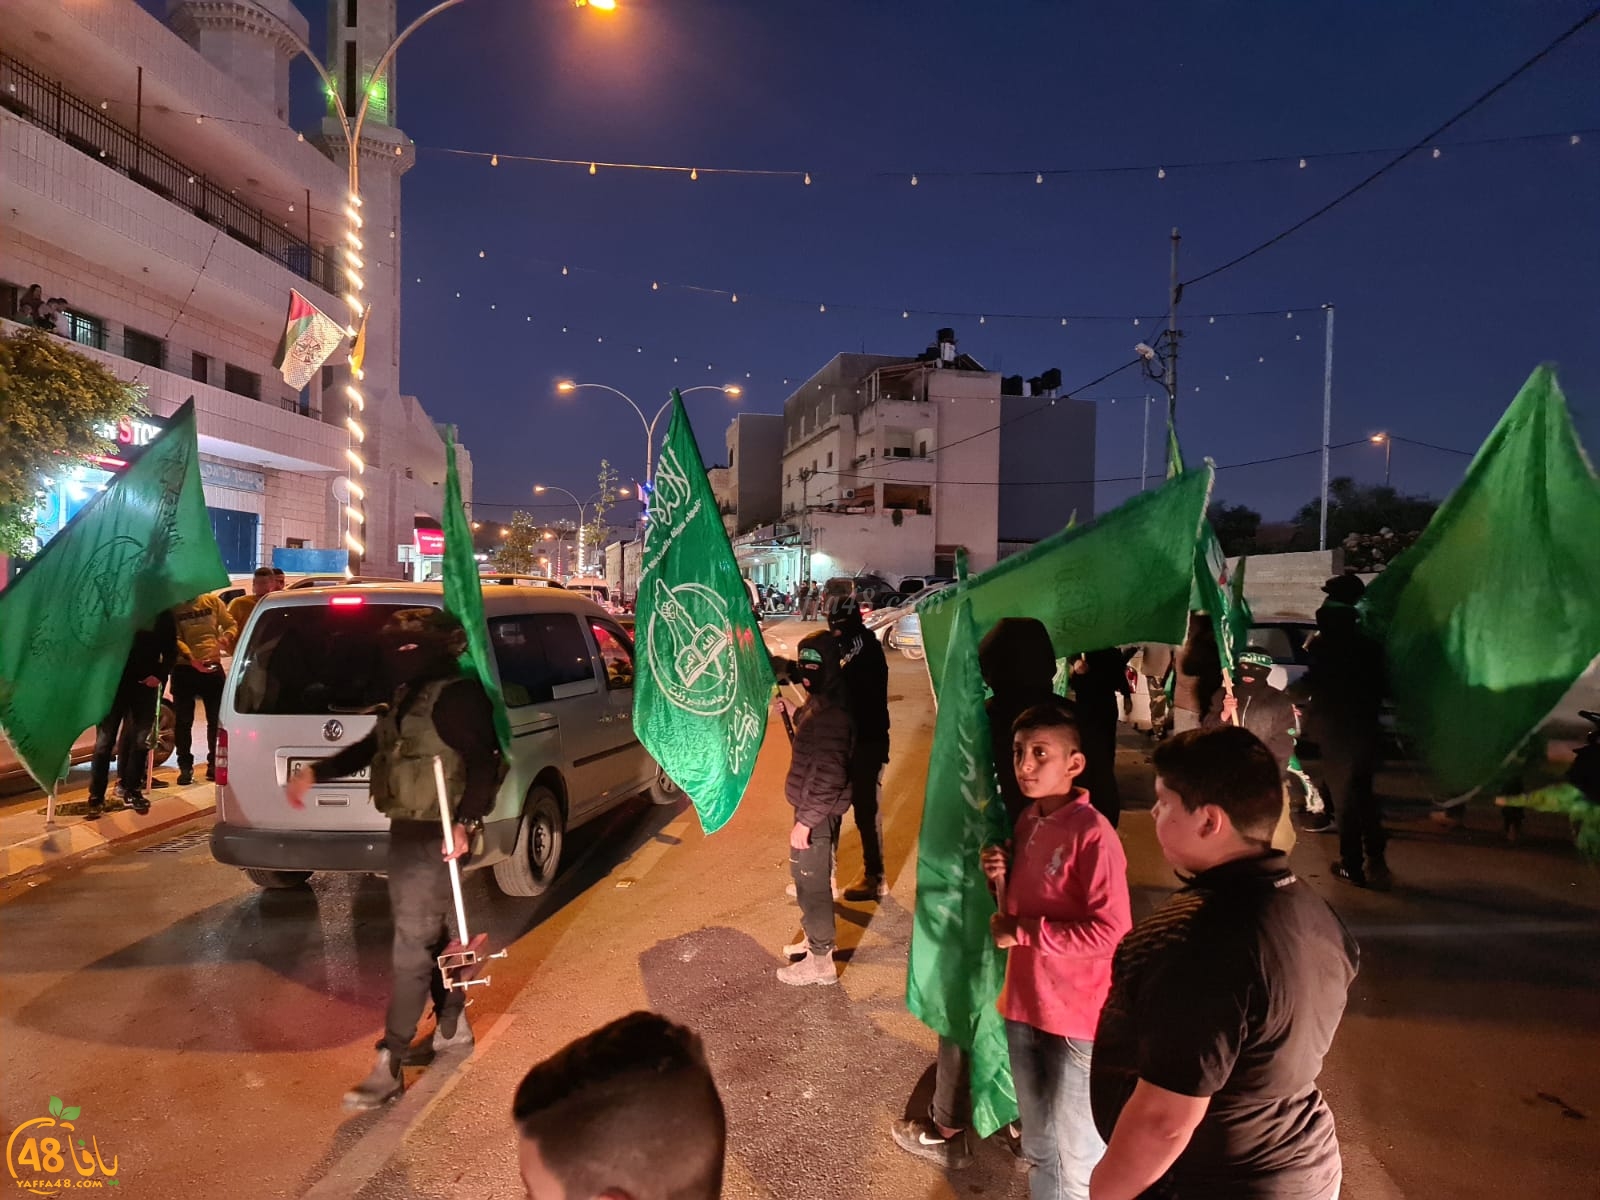  بالصور: مسيرة في استقبال الأسير المحرر شكري خواجا بنعلين 